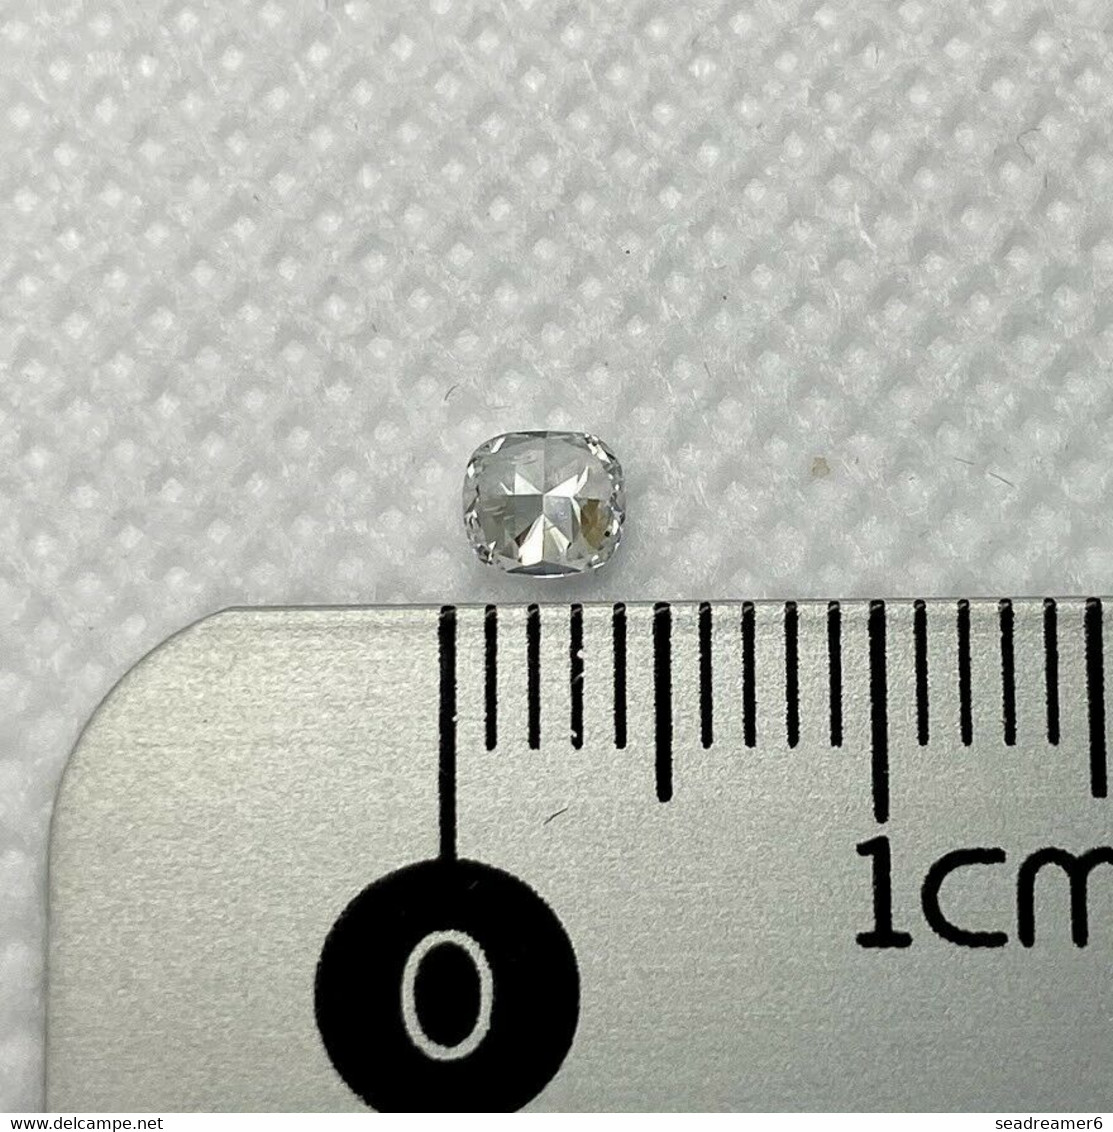 Diamant Naturel Coussin 0.26 Carat  Couleur E Purete SI2 Certificat GIA N°5211177210 - Diamante